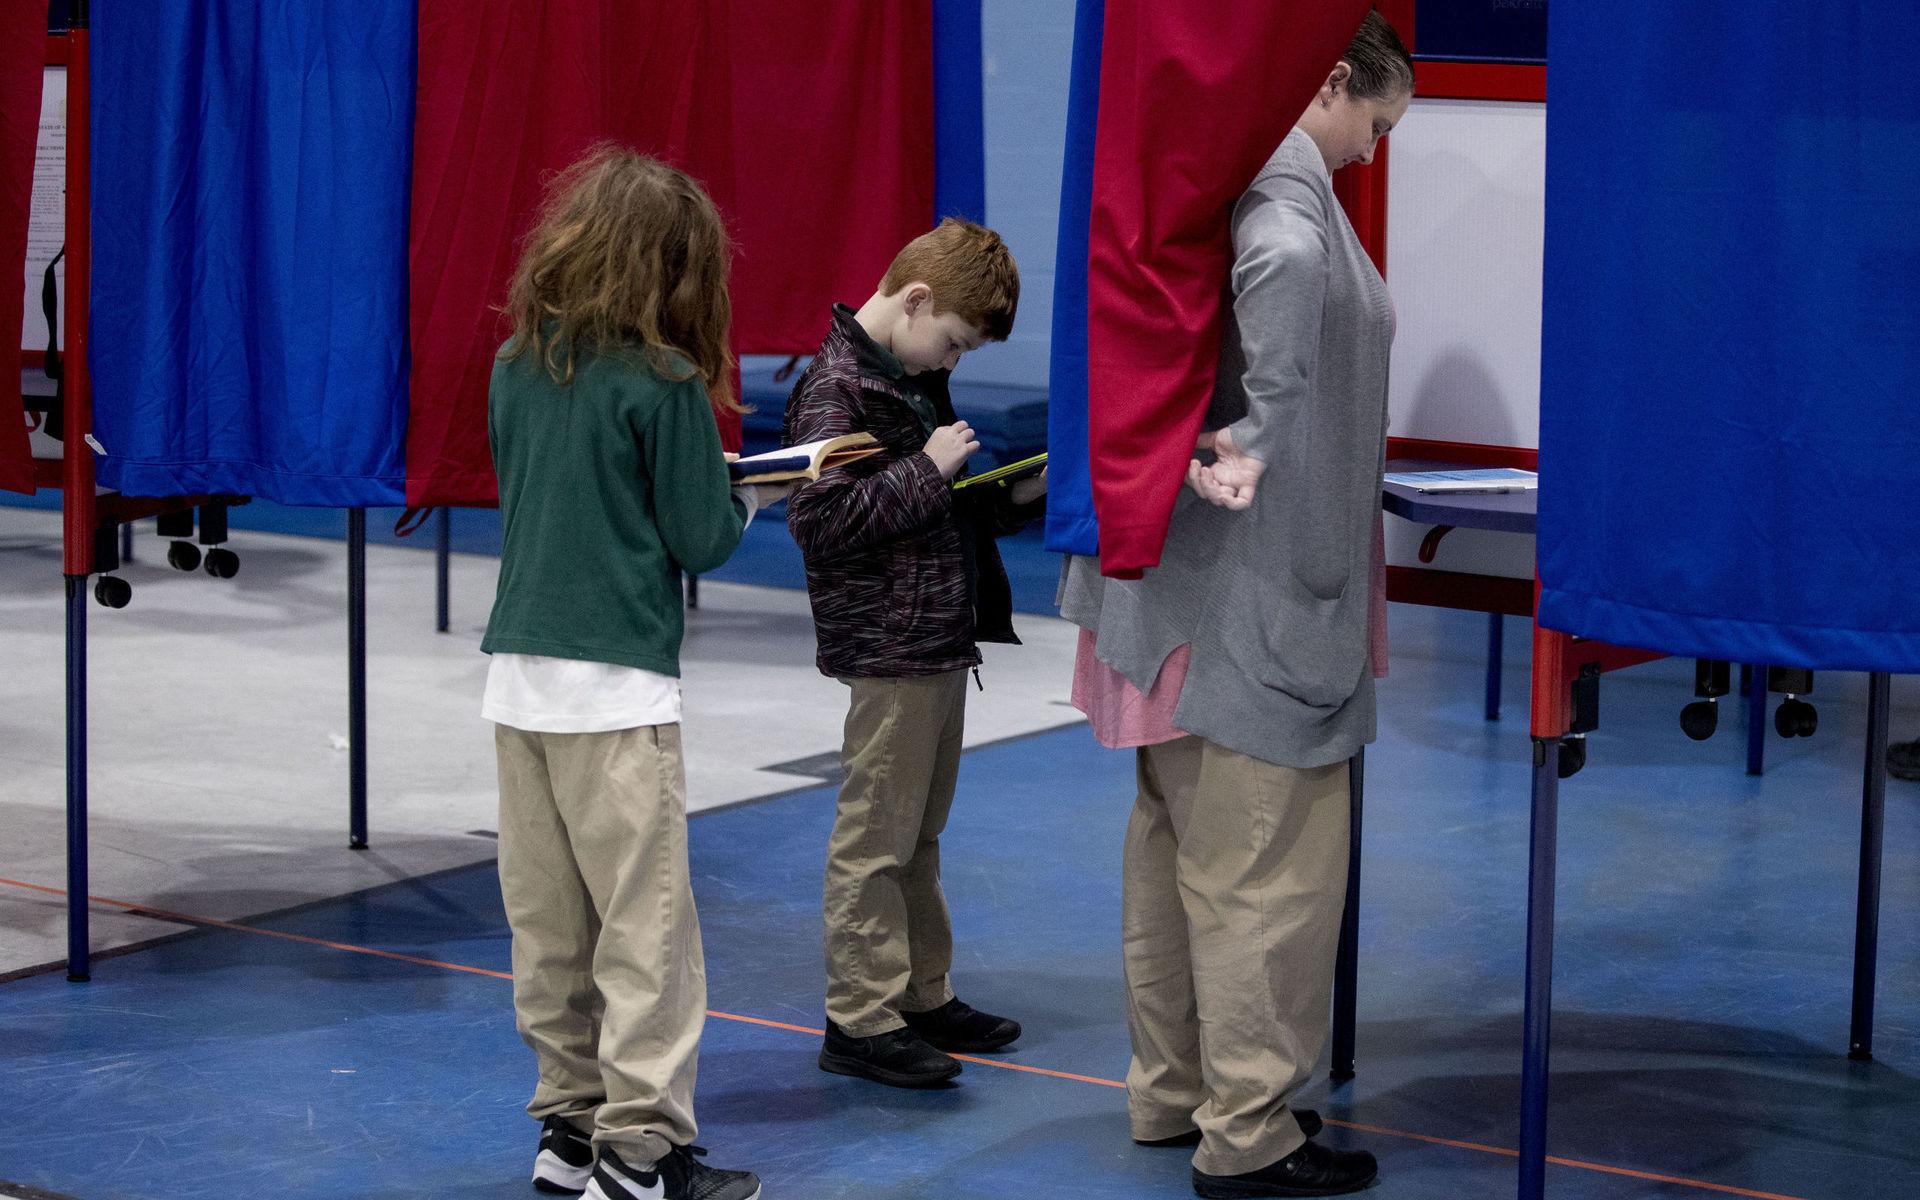 Valdeltagandet i primärvalet i New Hampshire ökade något, men var lågt bland unga. 